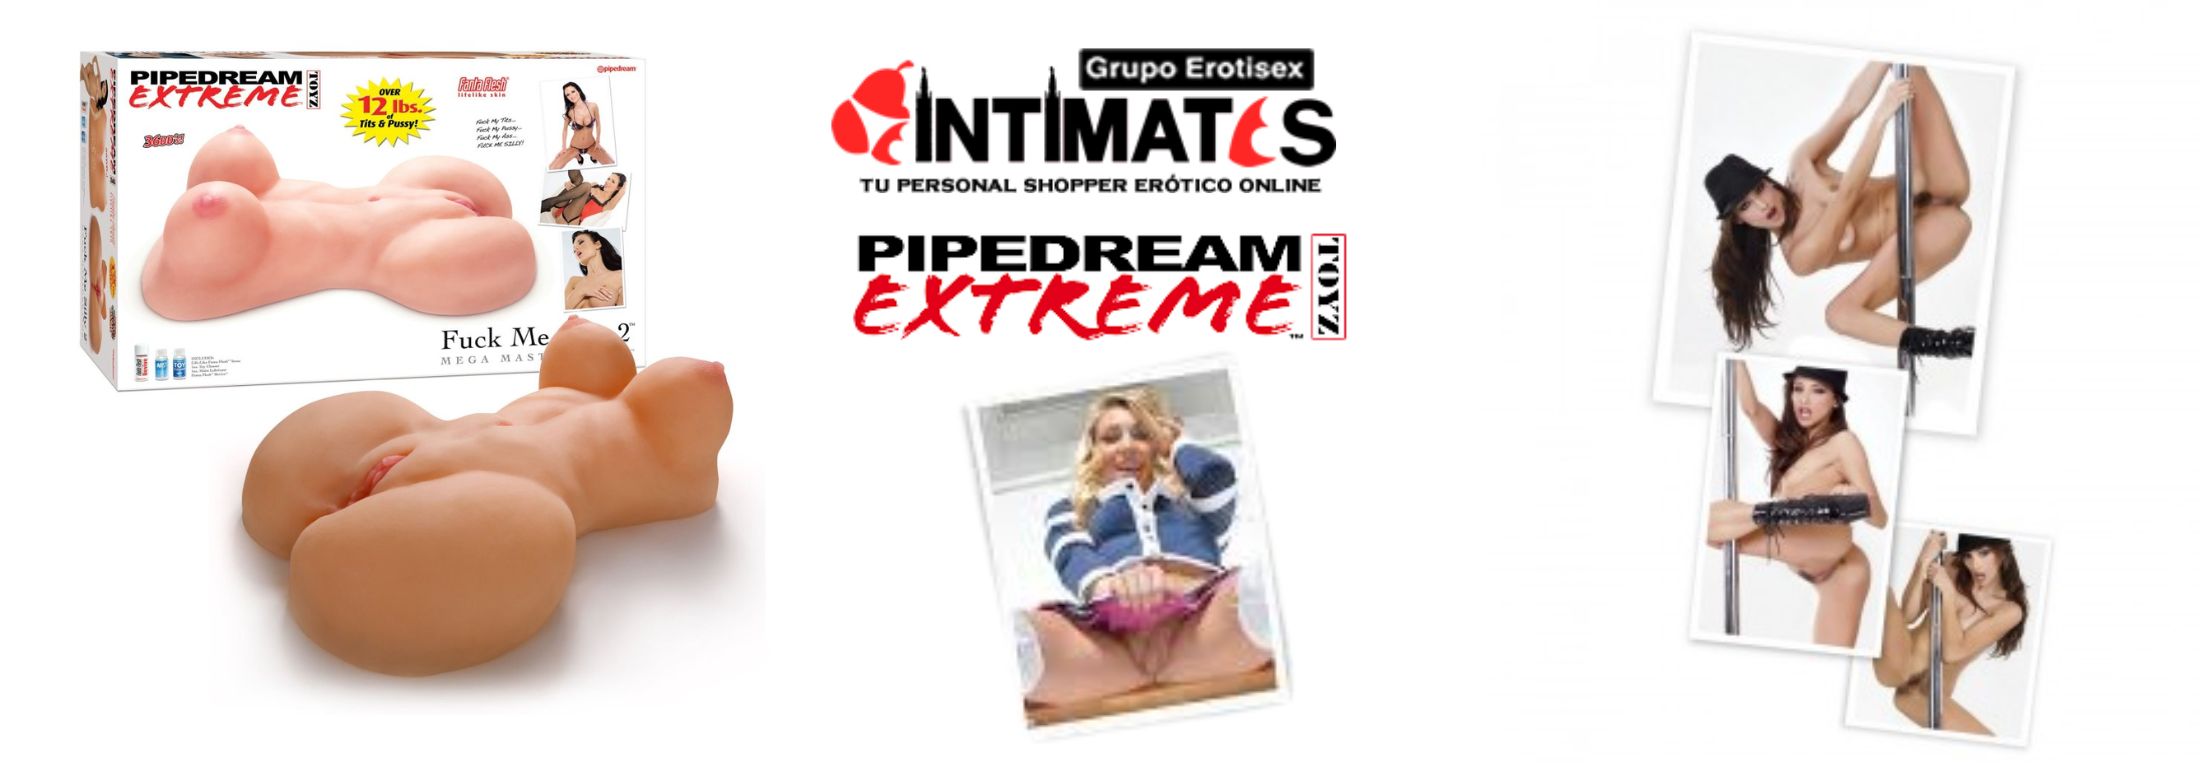 Pipedream Extreme Toyz, que puedes adquirir en intimates.es "Tu Personal Shopper Erótico Online" 